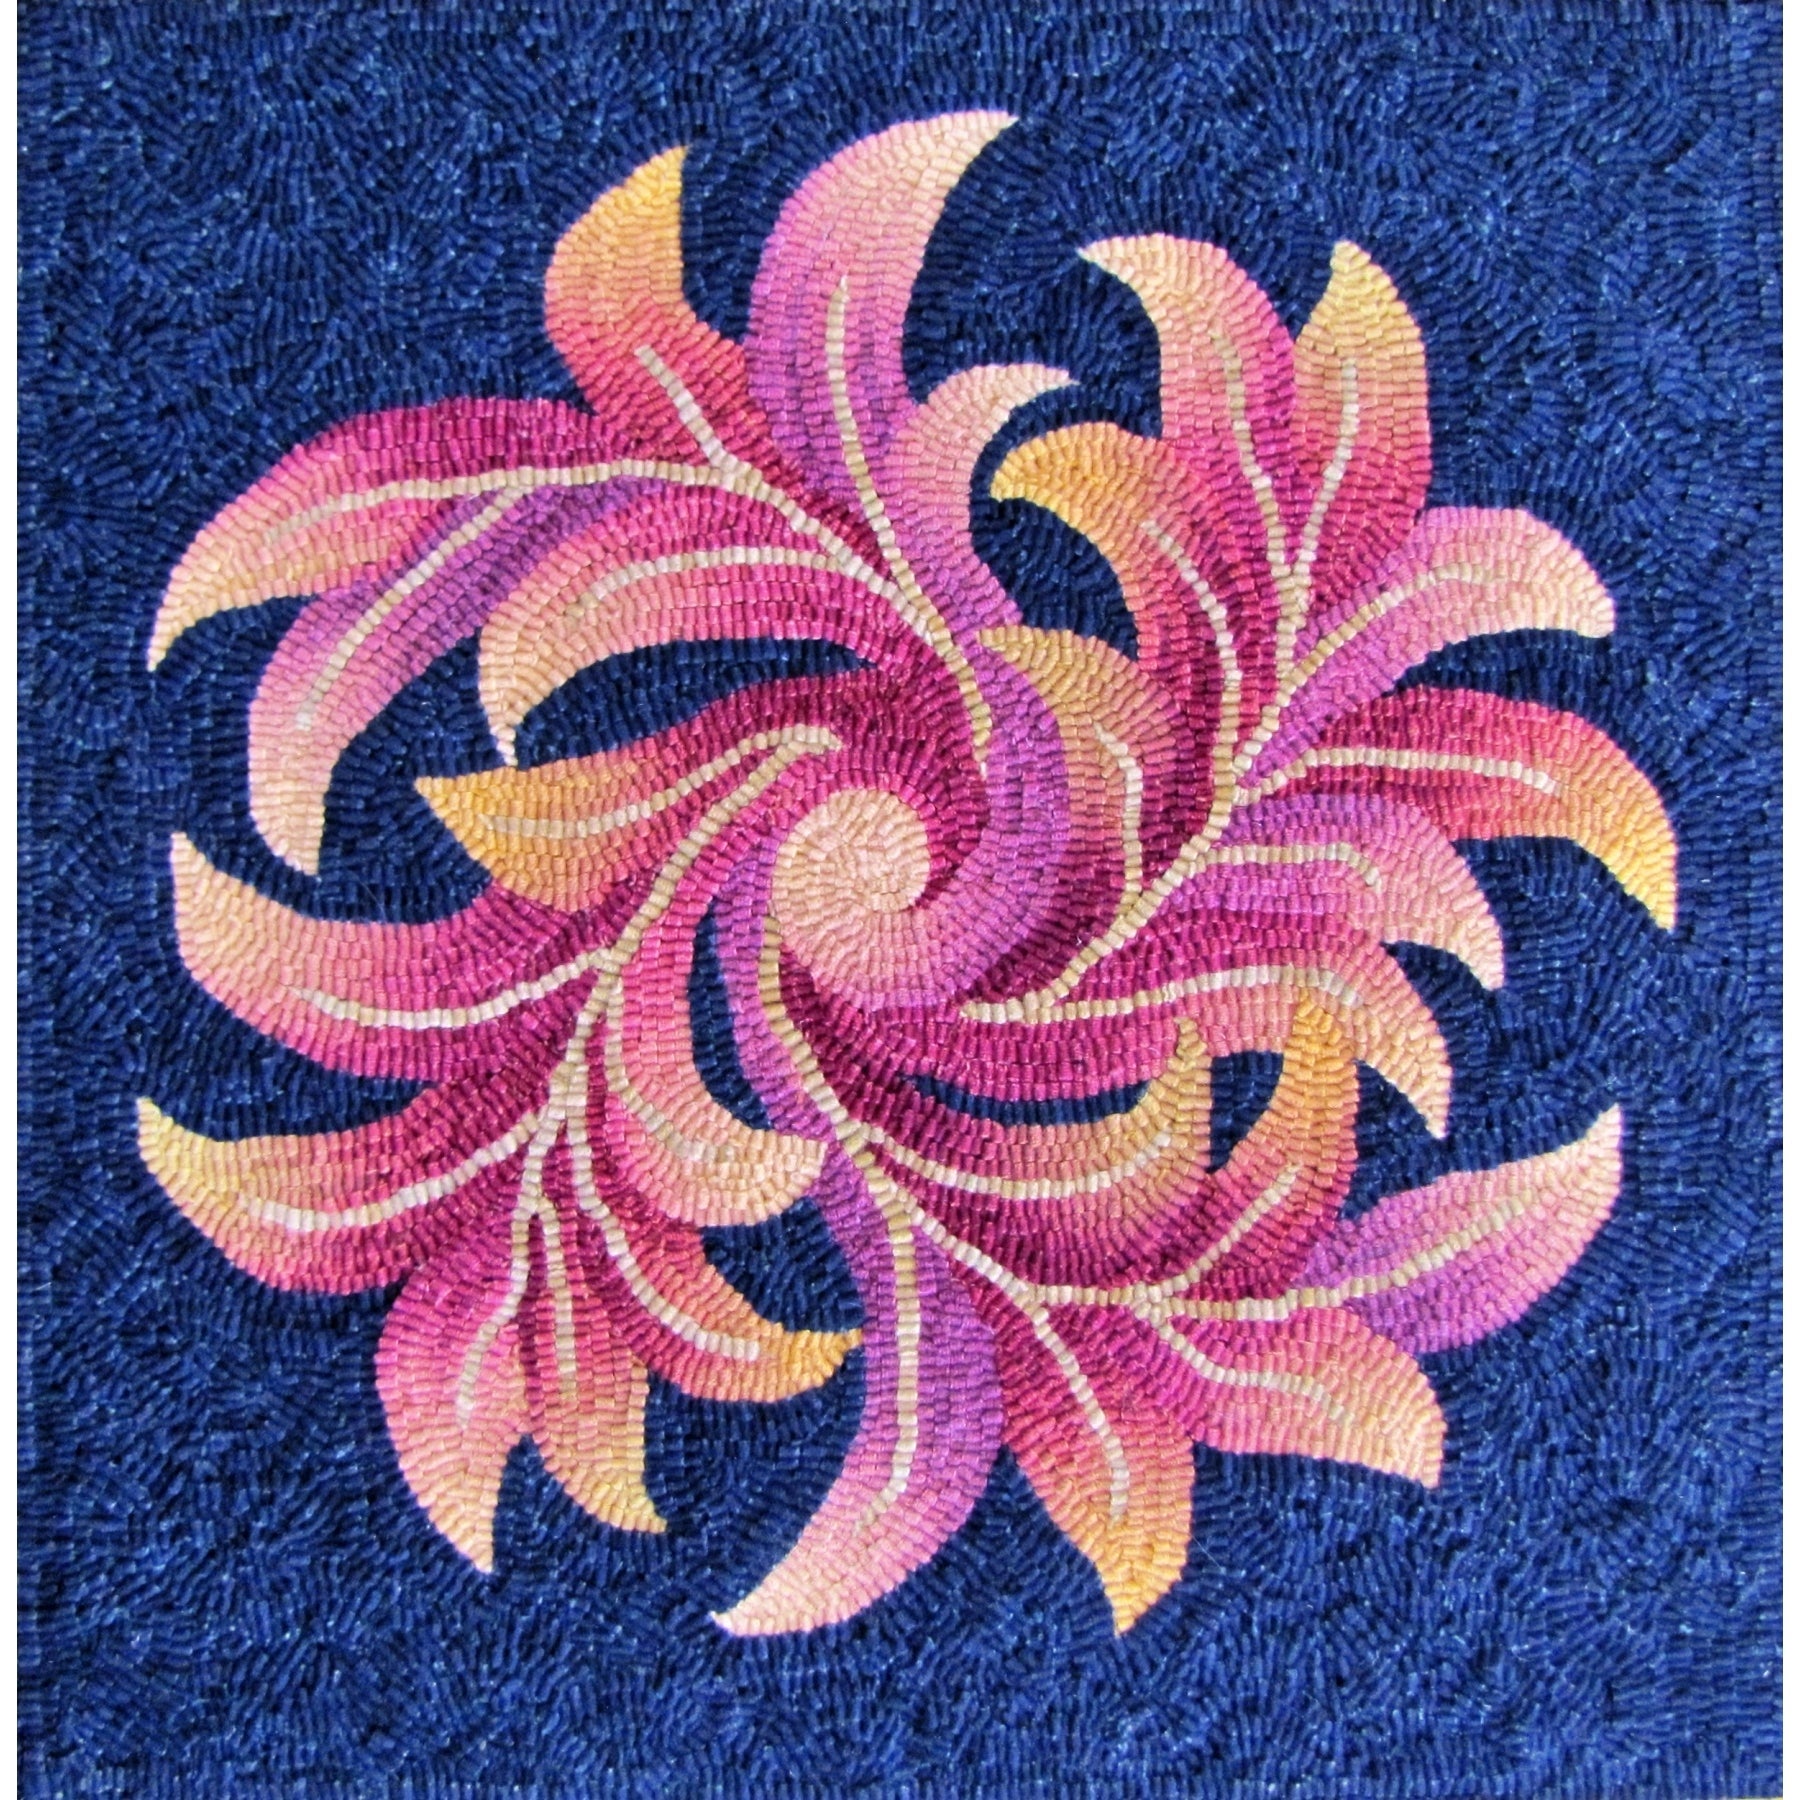 Pinwheel Scroll, rug hooked by Nancy Terhaar